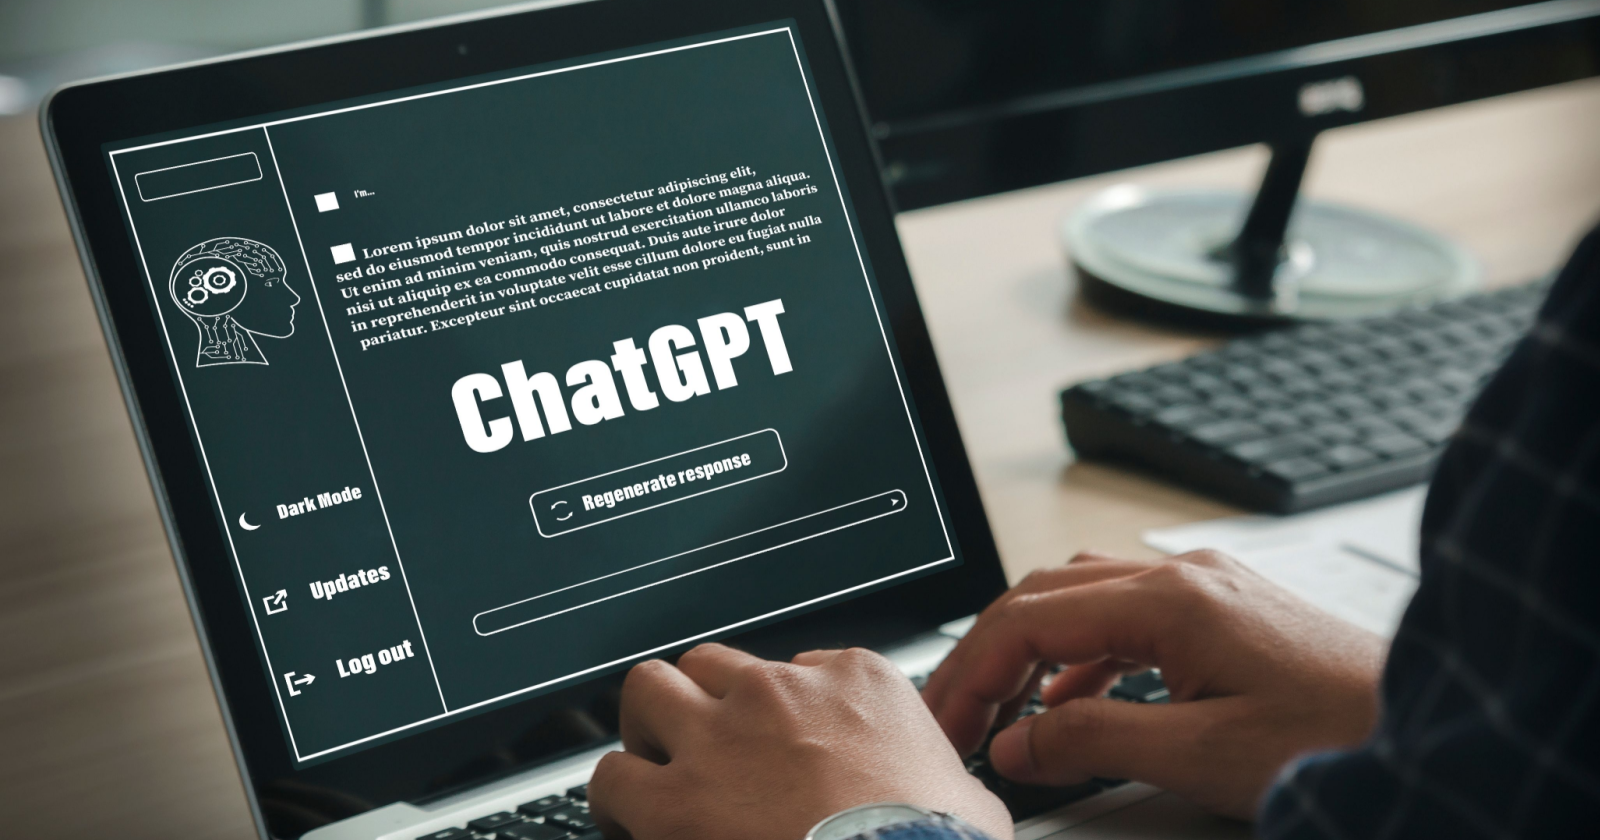 ChatGPT: conheça a mais nova forma de ganhar muito dinheiro na